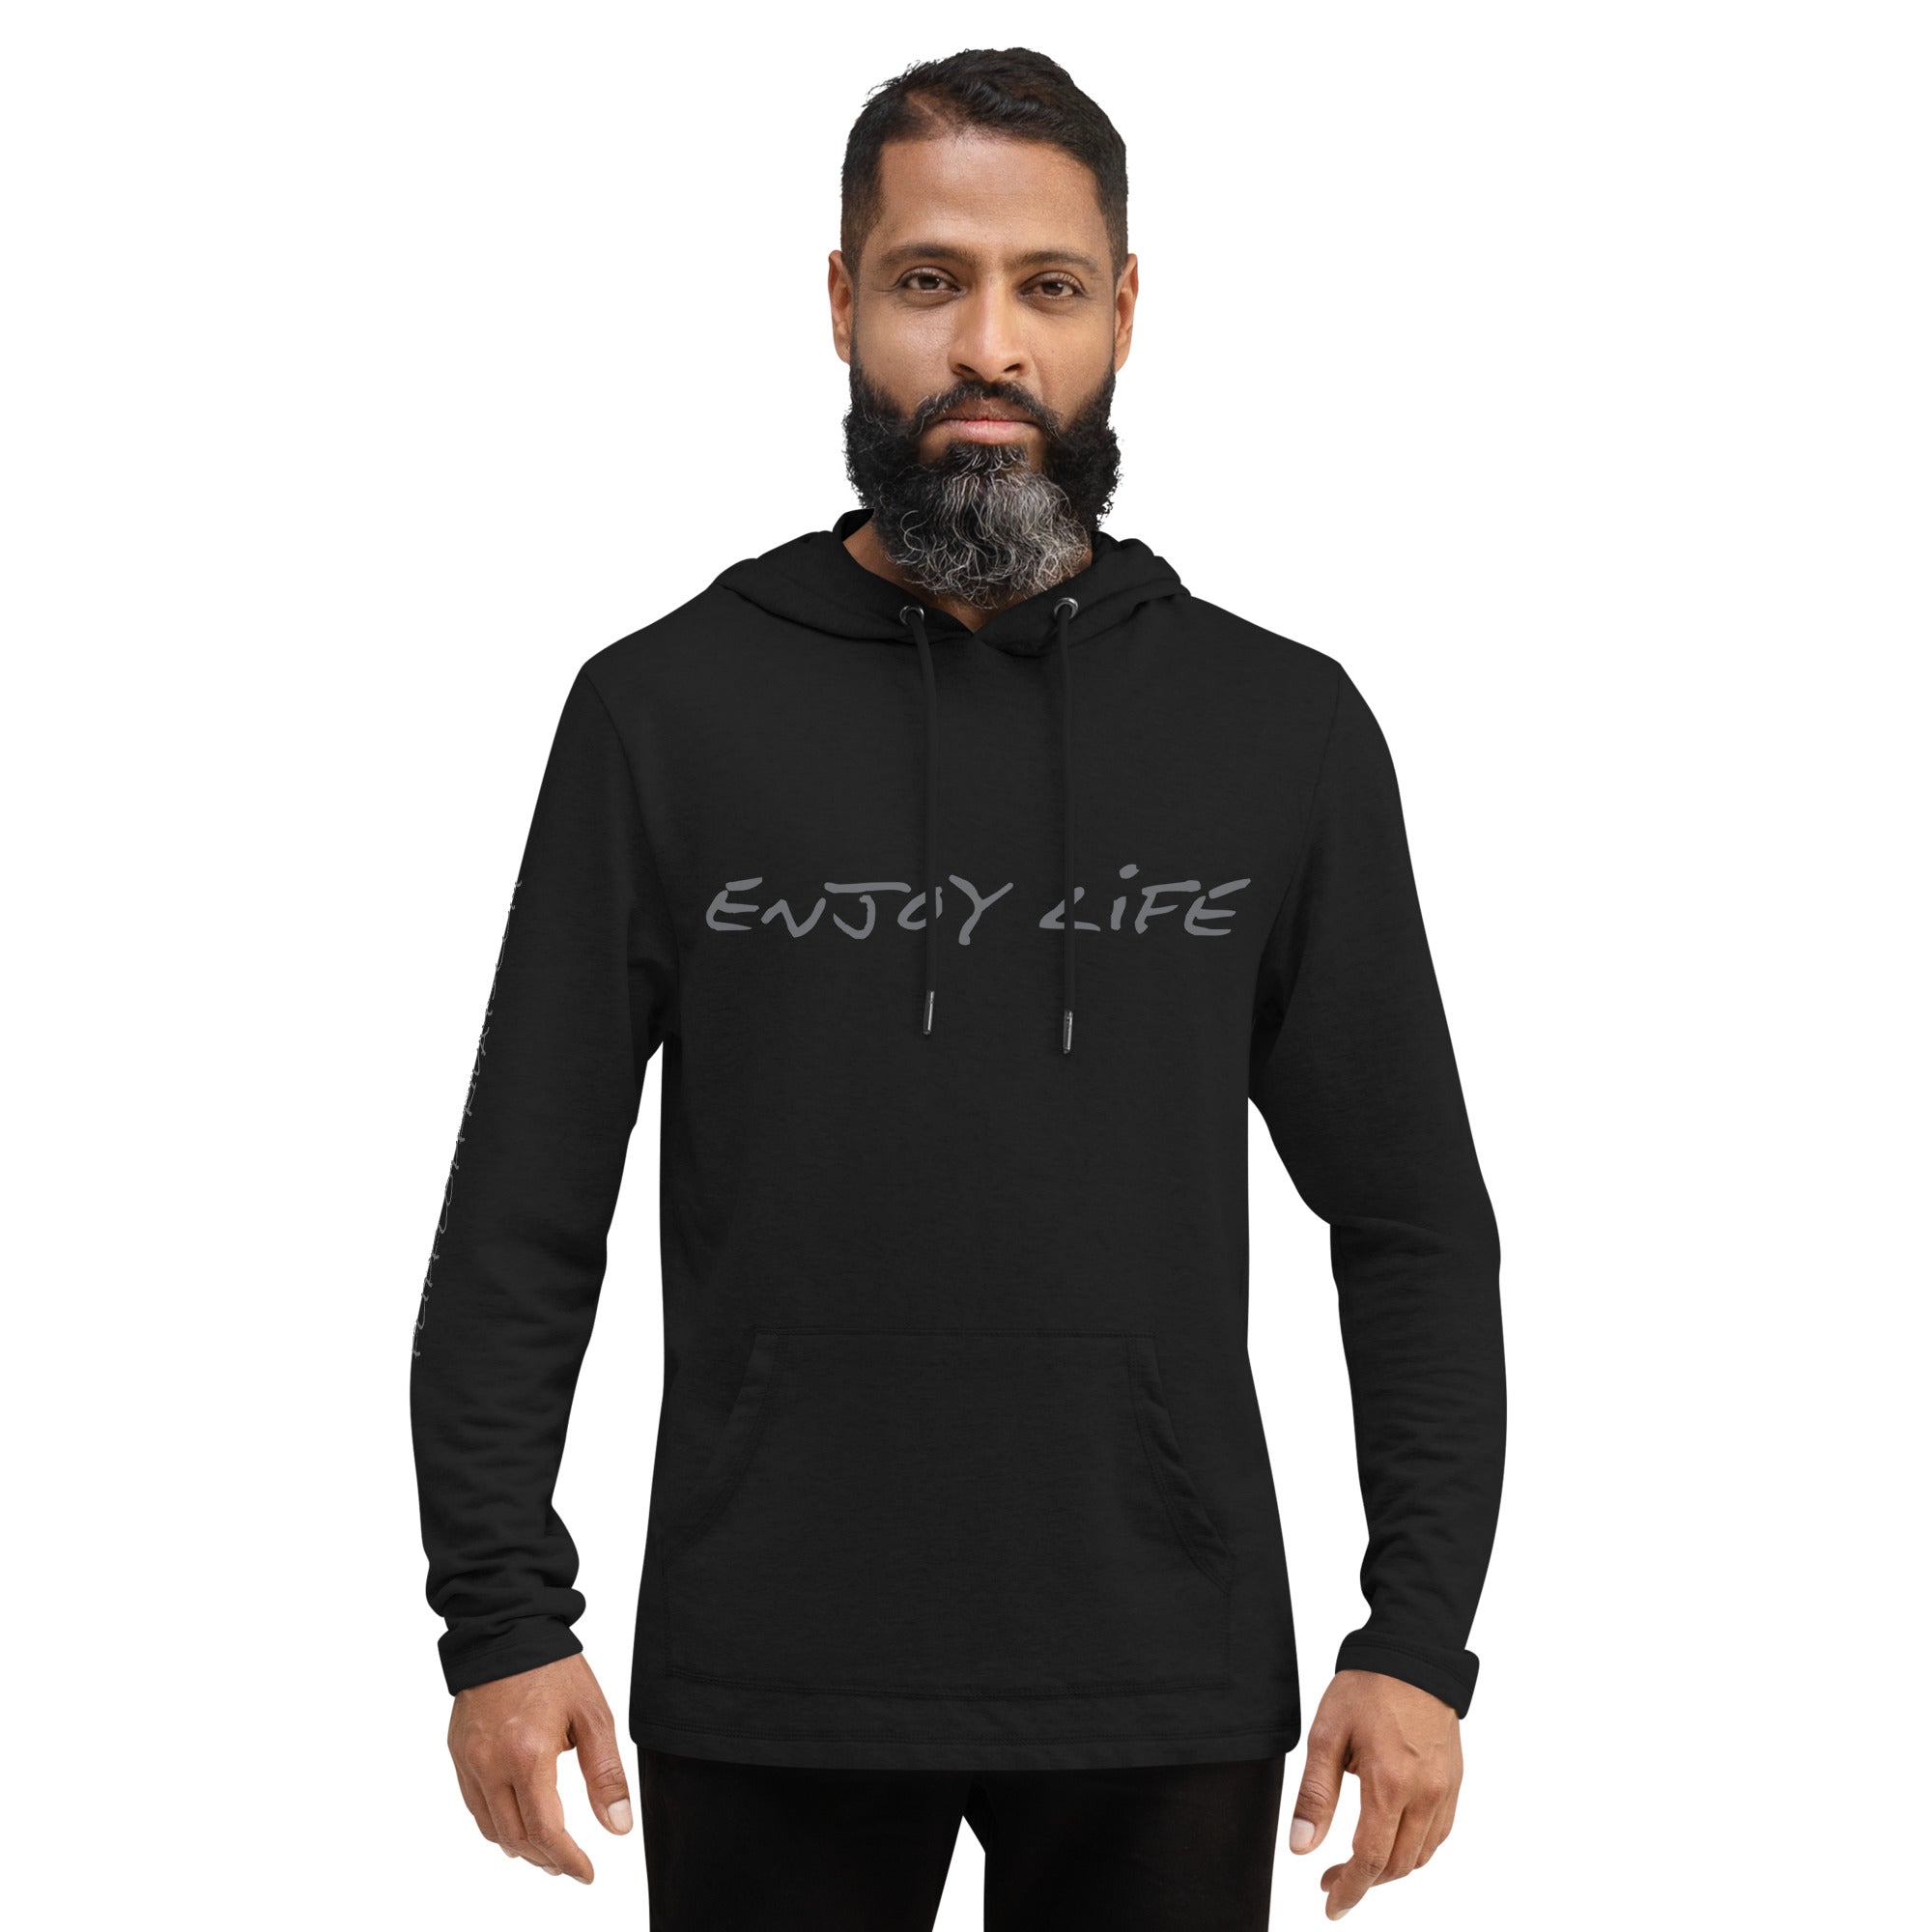 ENJOY LIFE | GREY - District DT571 Unisex Lightweight Hoodie